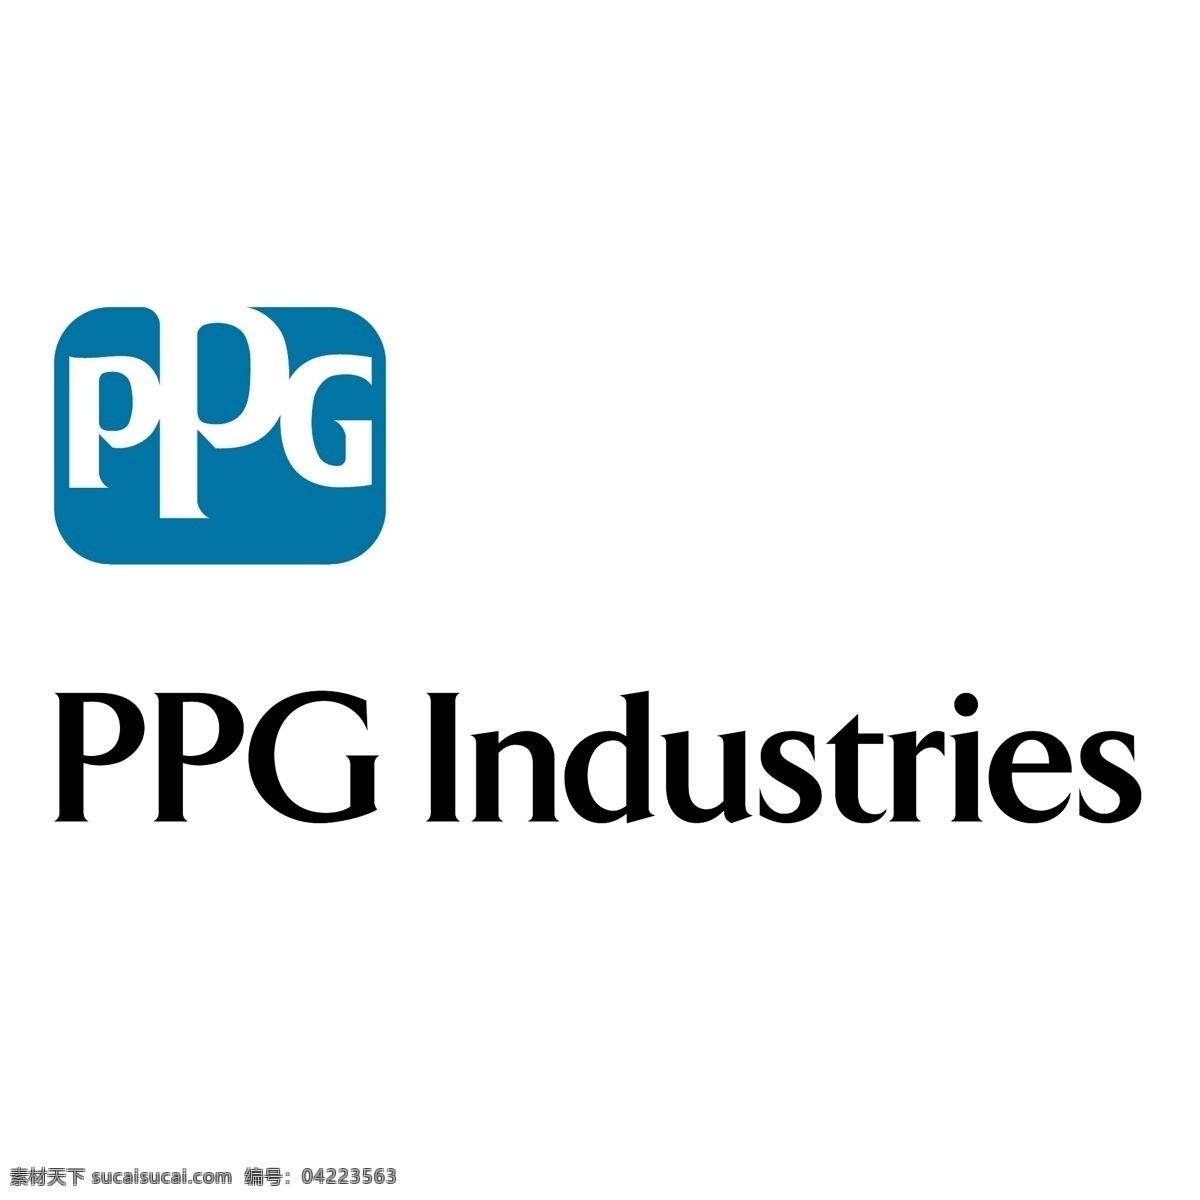 ppg 工业 公司 产业